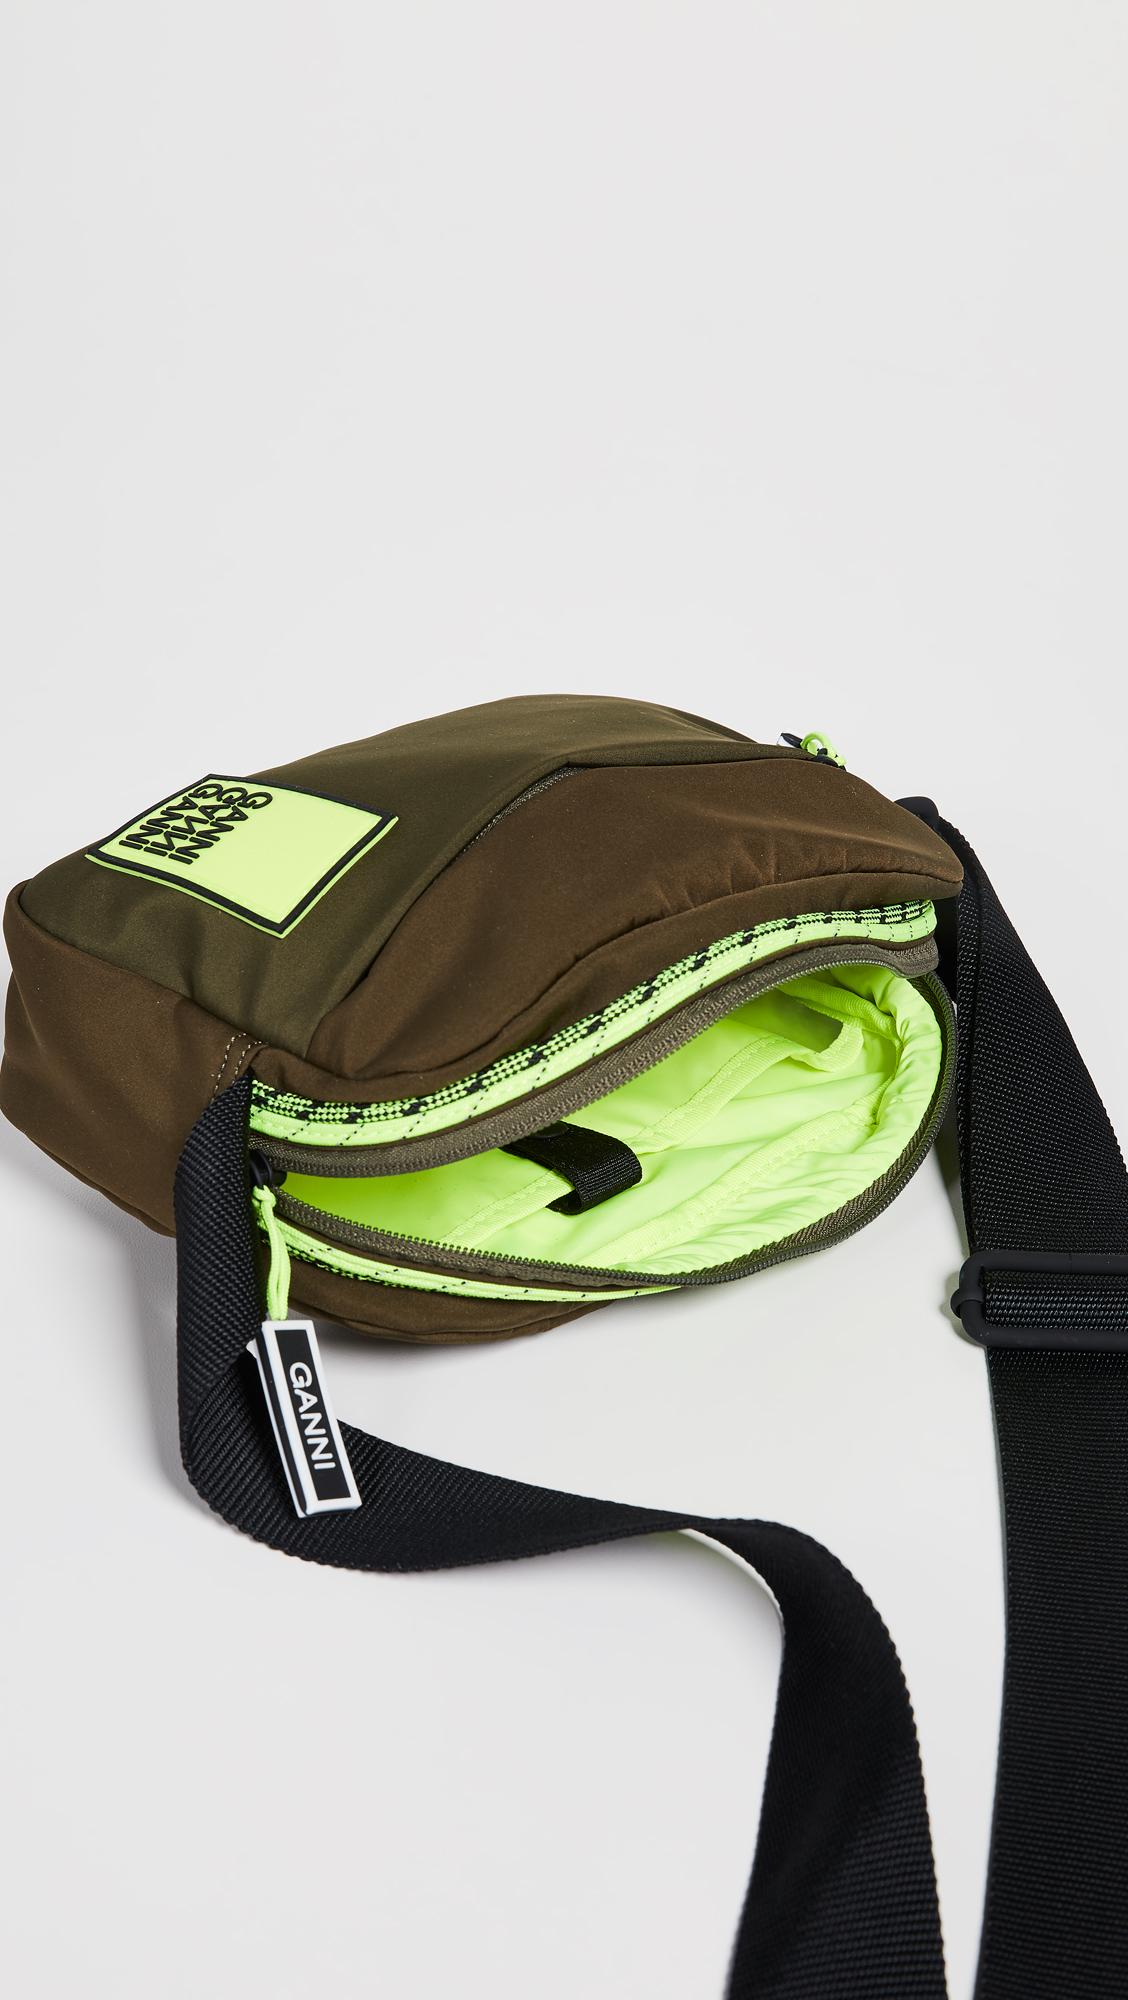 Ganni Tech Fabric Crossbody Bag in Green | Lyst